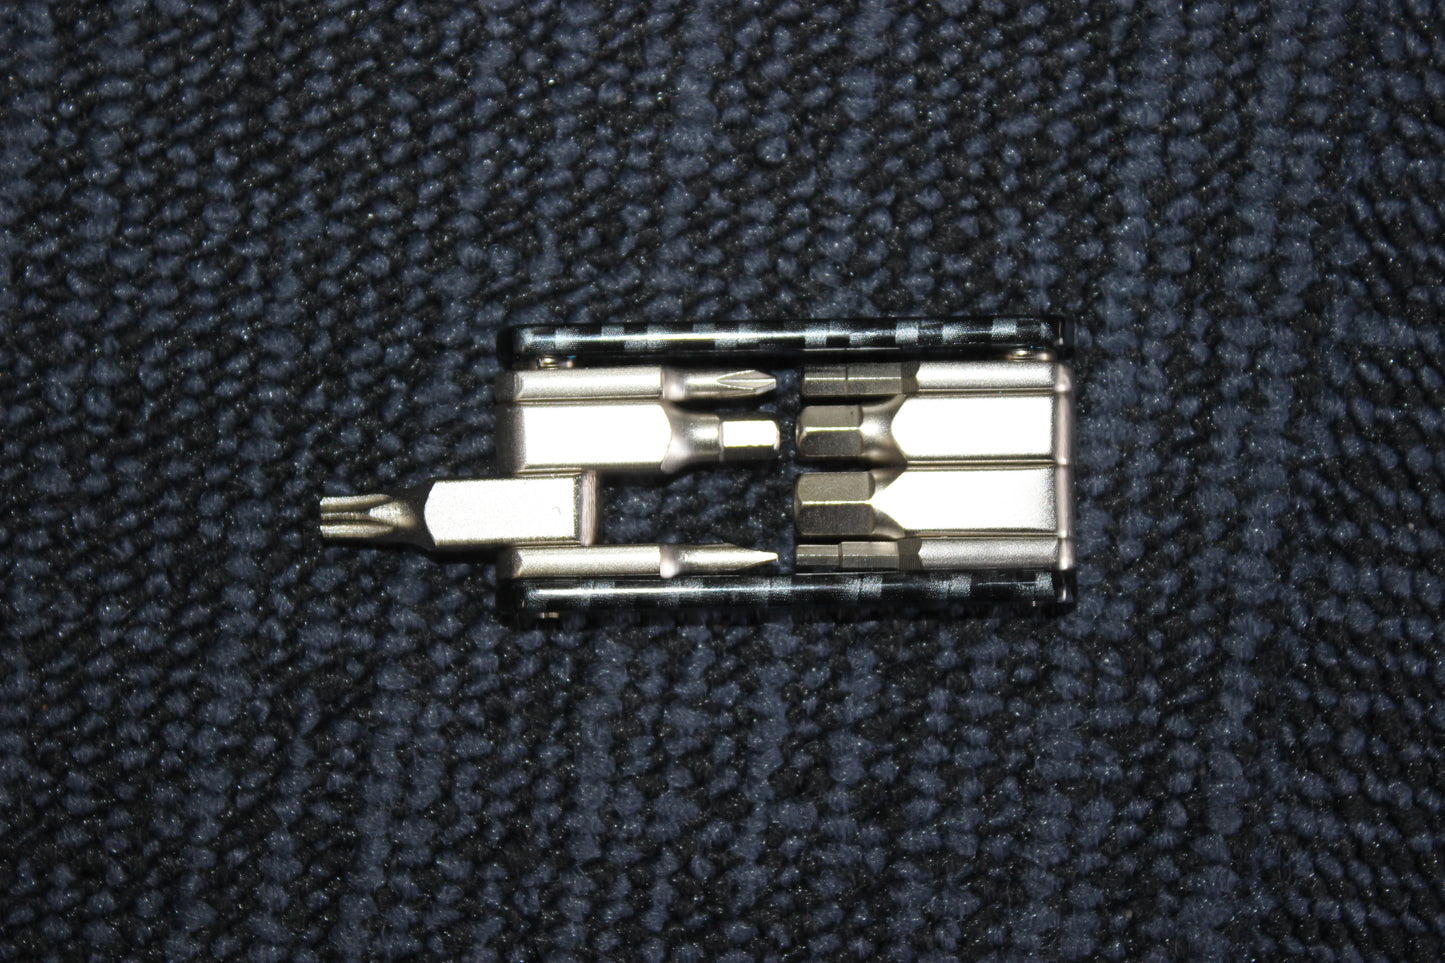 8 in 1 Multi-Function Mini Pocket Screwdriver - Portable Repair Tool Kit (Small)